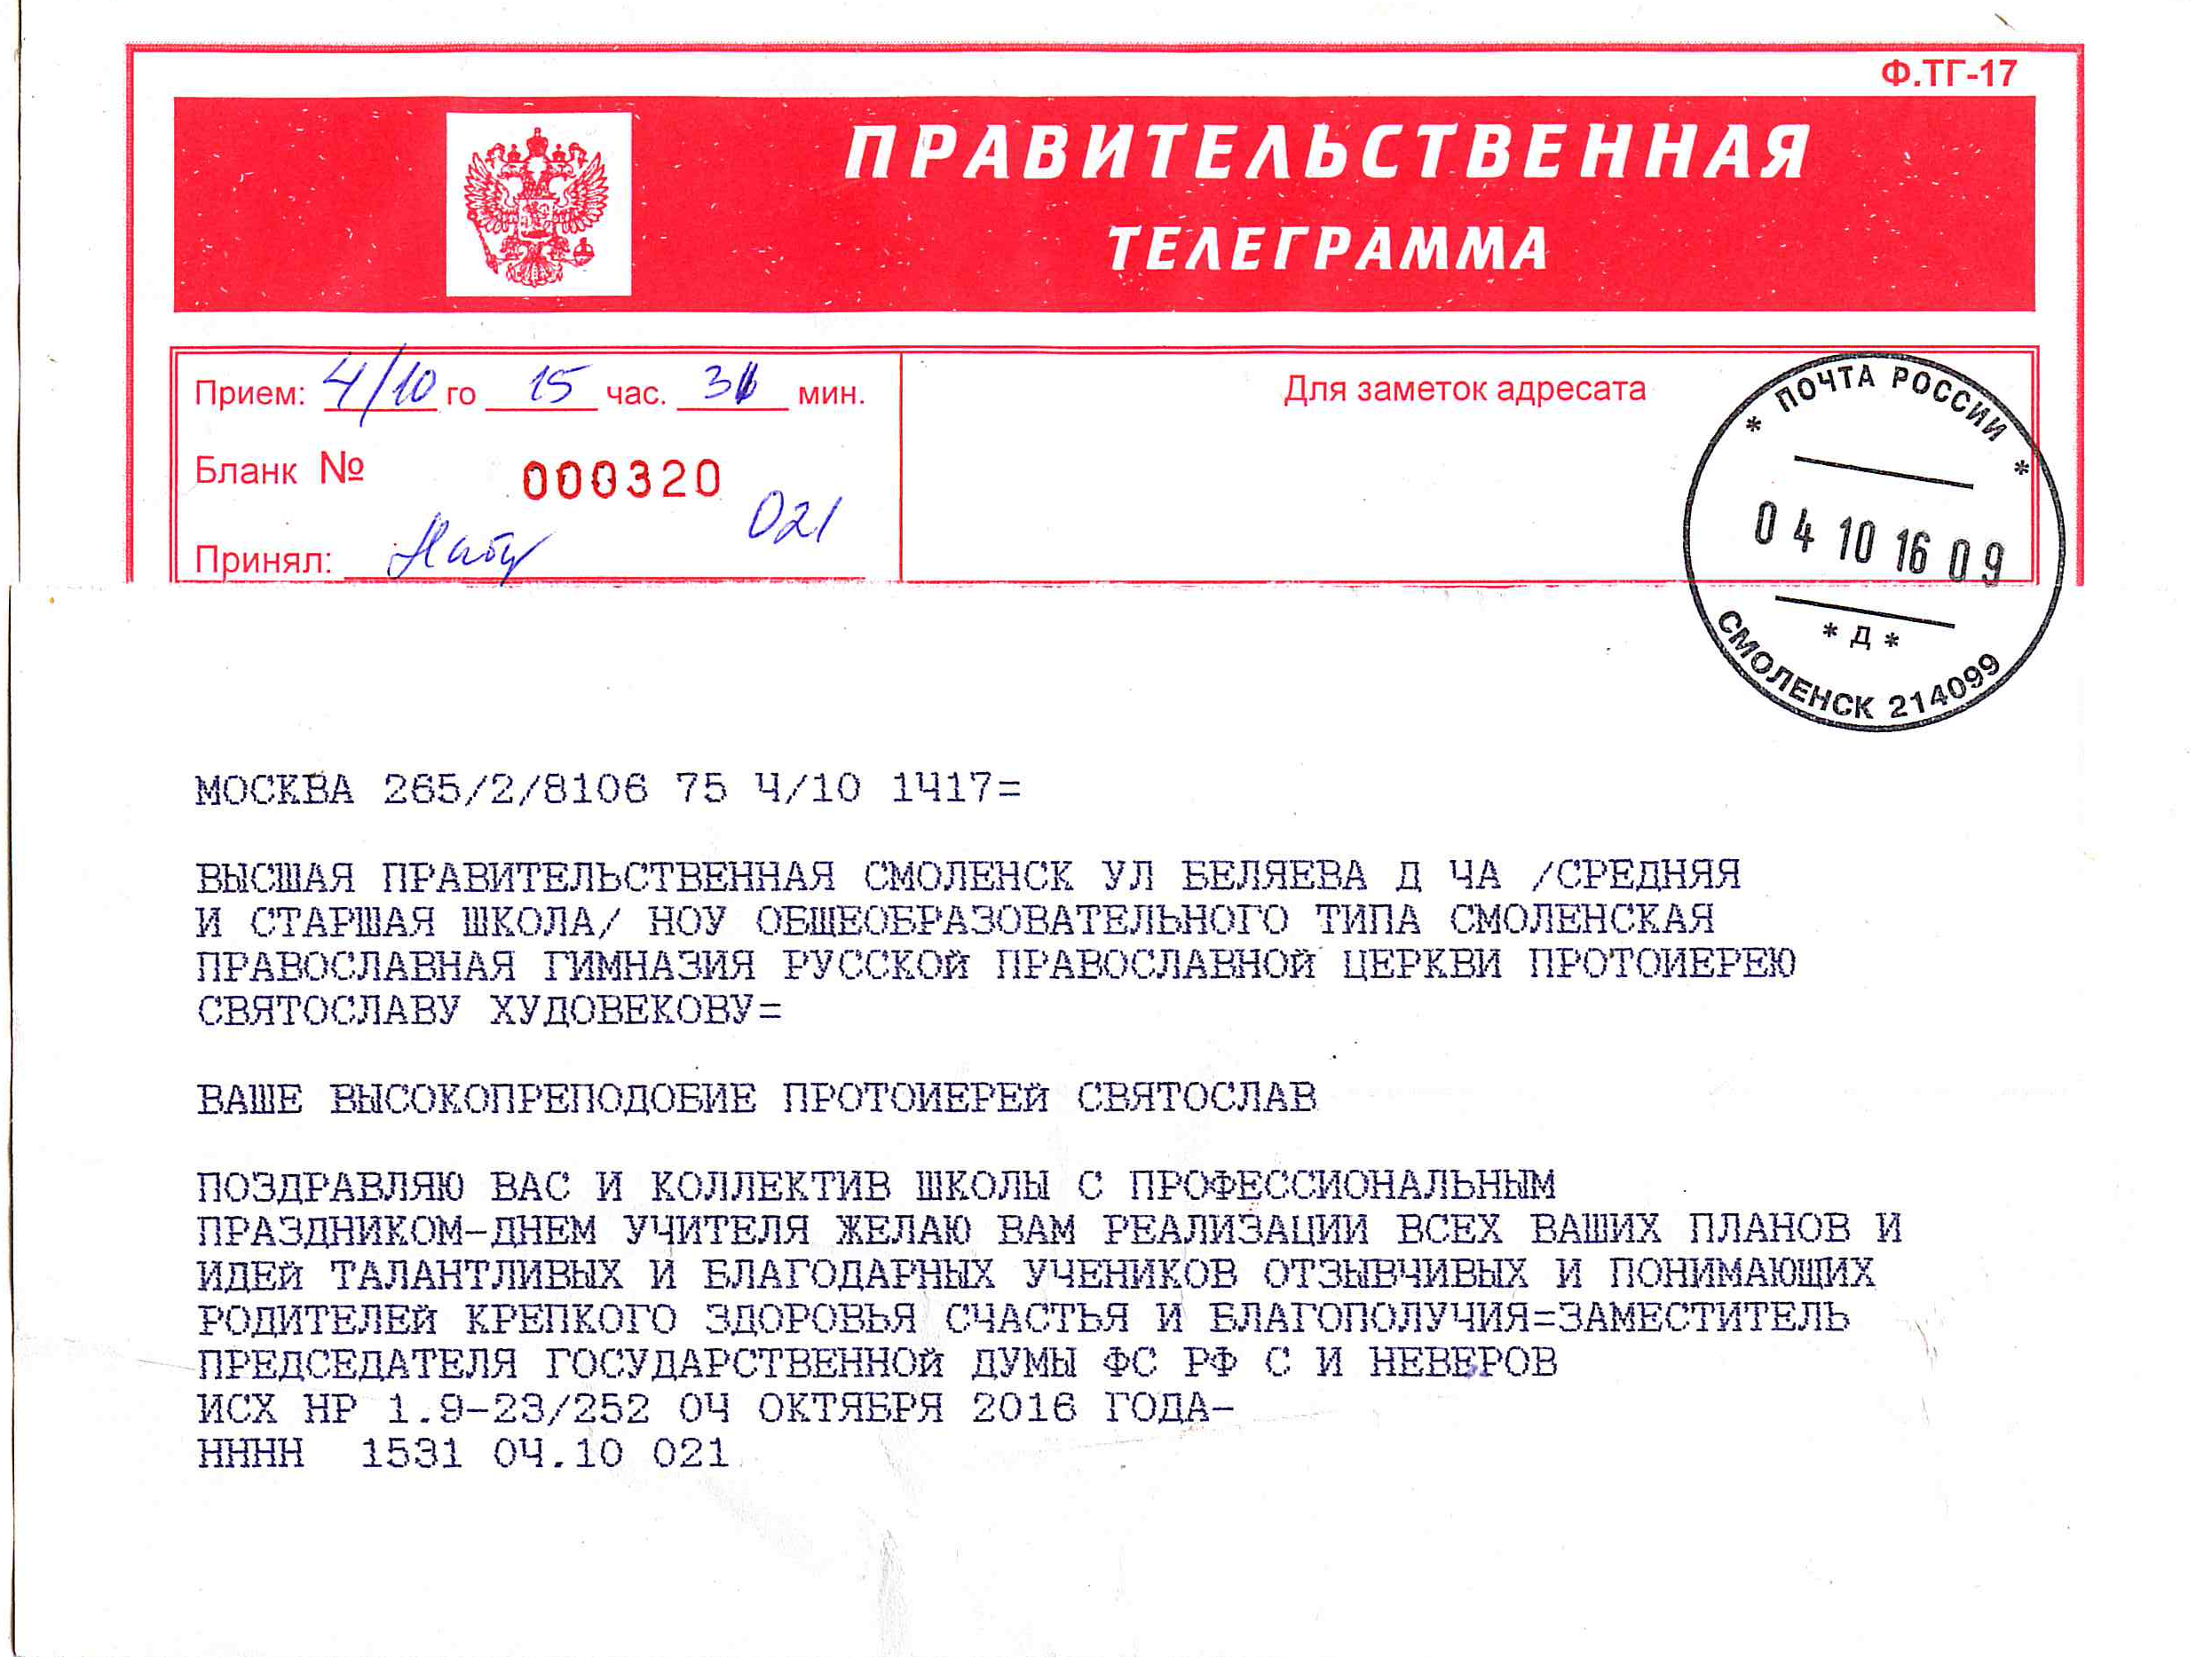 Скачать бесплатно телеграммы для андроид на русском языке фото 74